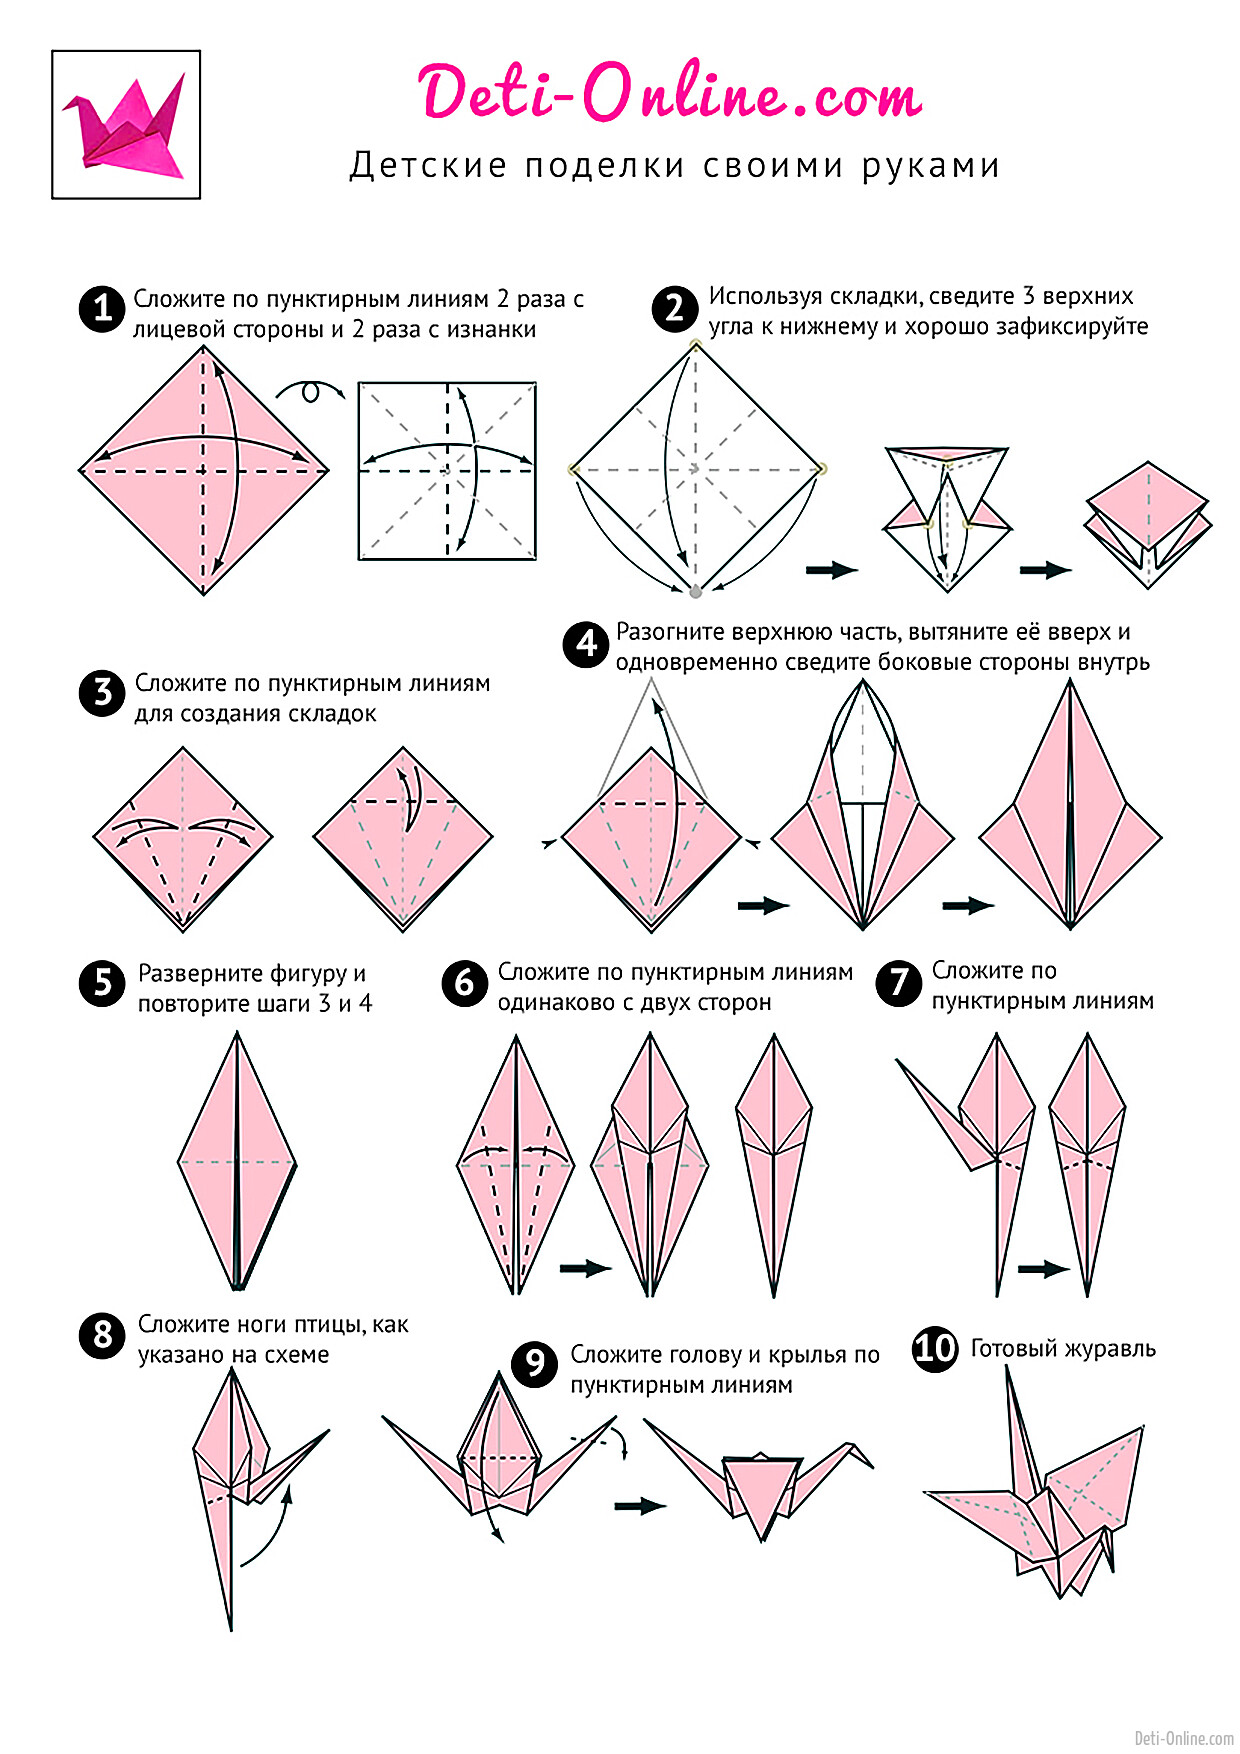 Оригами журавлик способы. Журавлик из бумаги схема складывания. Как сделать журавлика из бумаги. Схема журавлика оригами простая для детей. Как сделать журавлика из бумаги пошаговая инструкция.